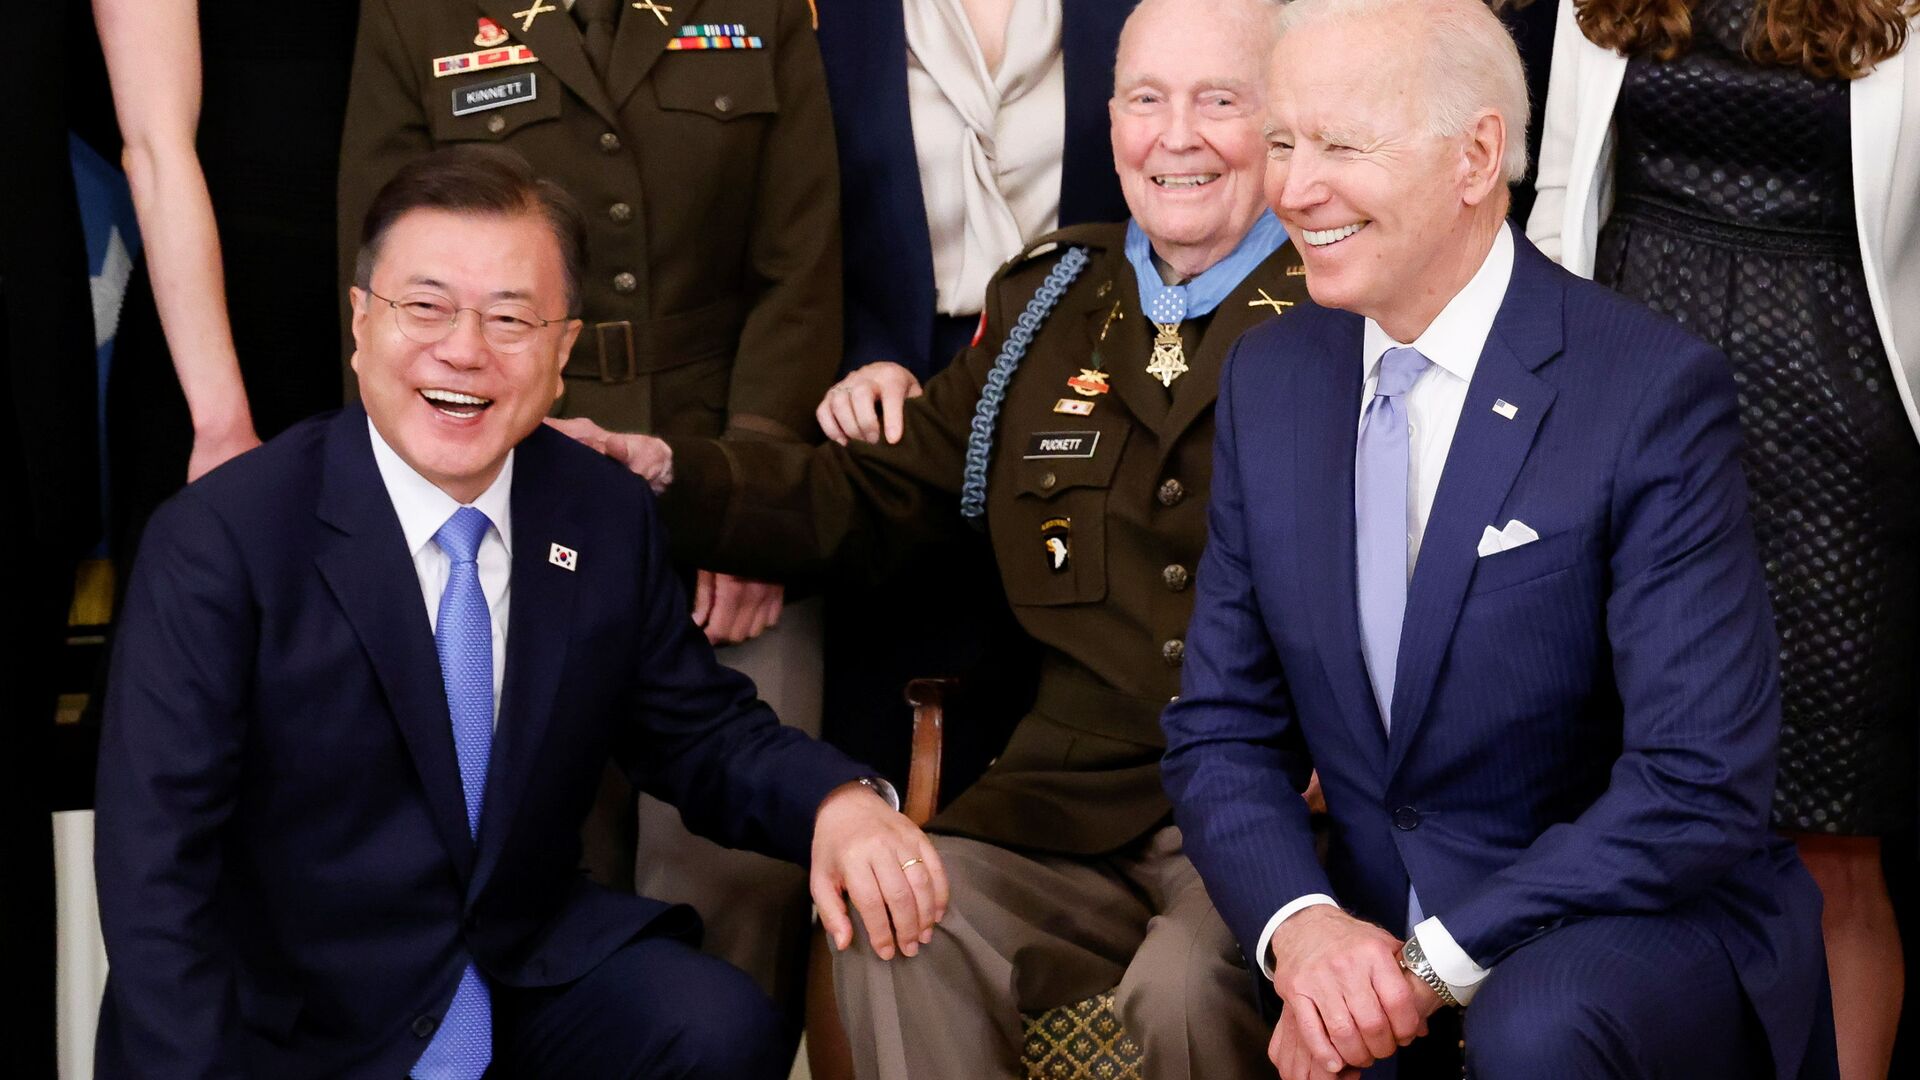 الرئيس الأمريكي، جو بايدن، ورئيس كوريا الجنوبية، مون جاي إن، يشاركان في حفل ميدالية الشرف بالعاصمة الأمريكية واشنطن، 21 مايو/ أيار 2021 - سبوتنيك عربي, 1920, 22.07.2021